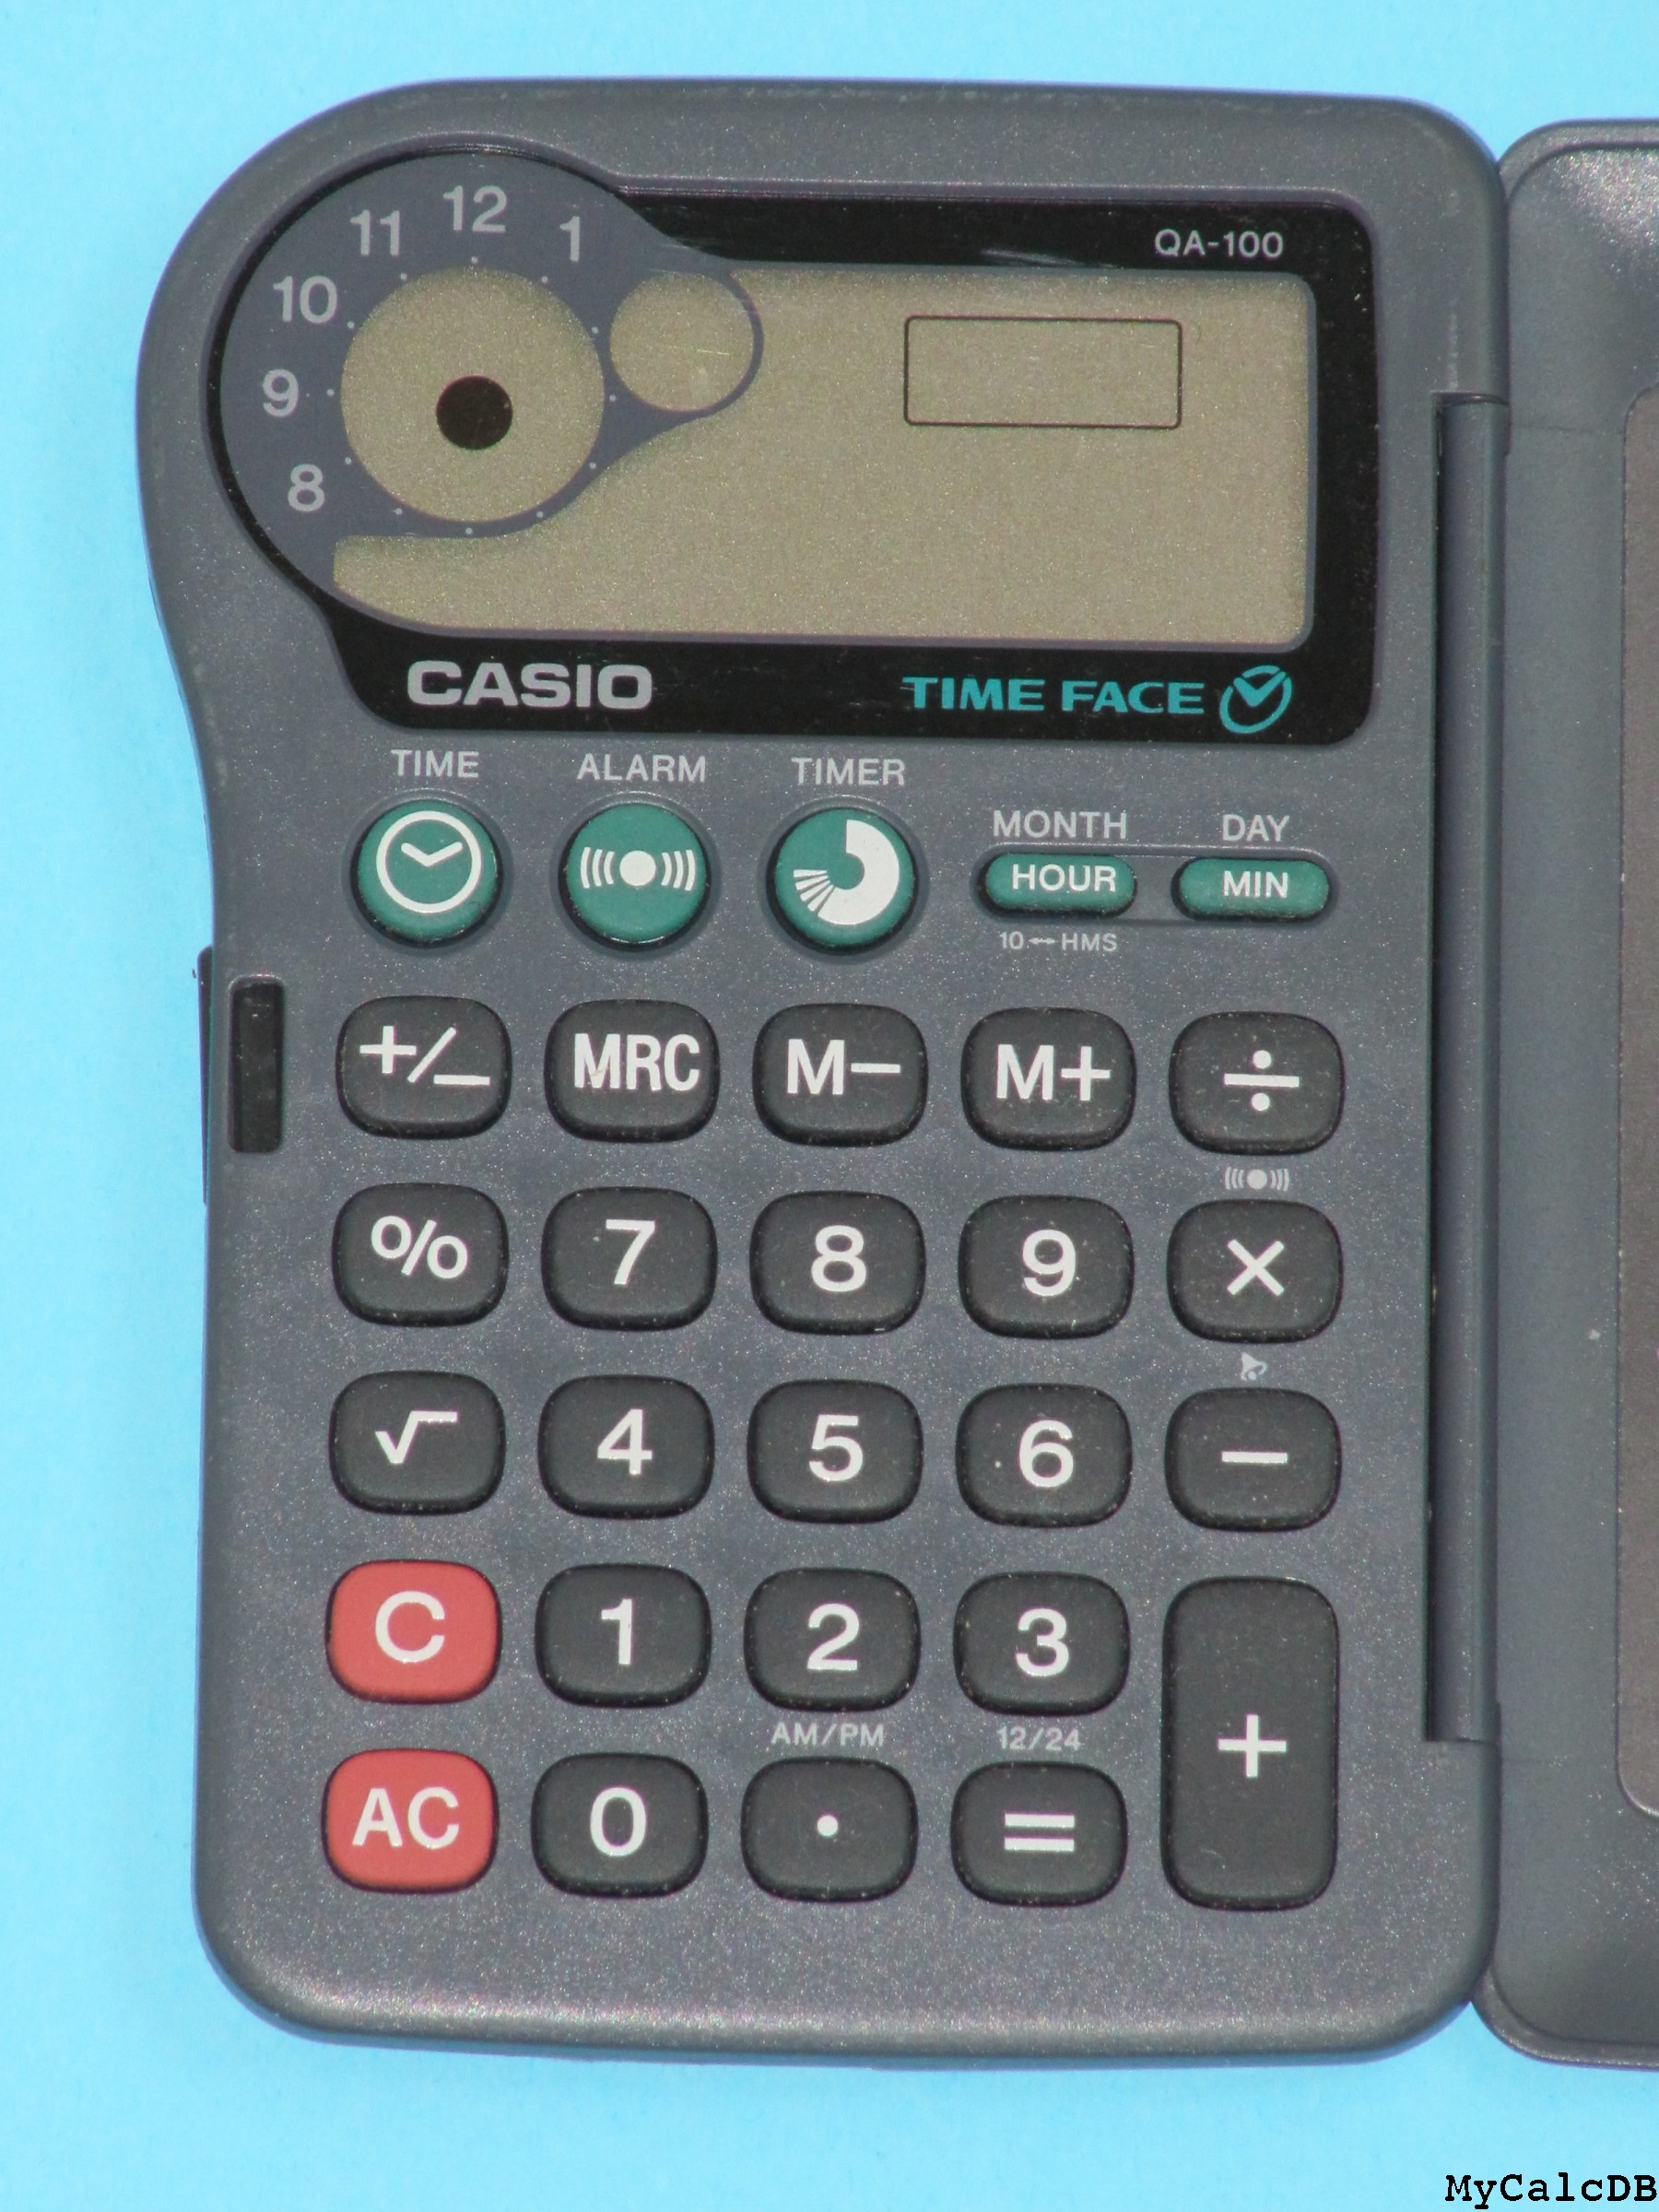 Casio QA-100